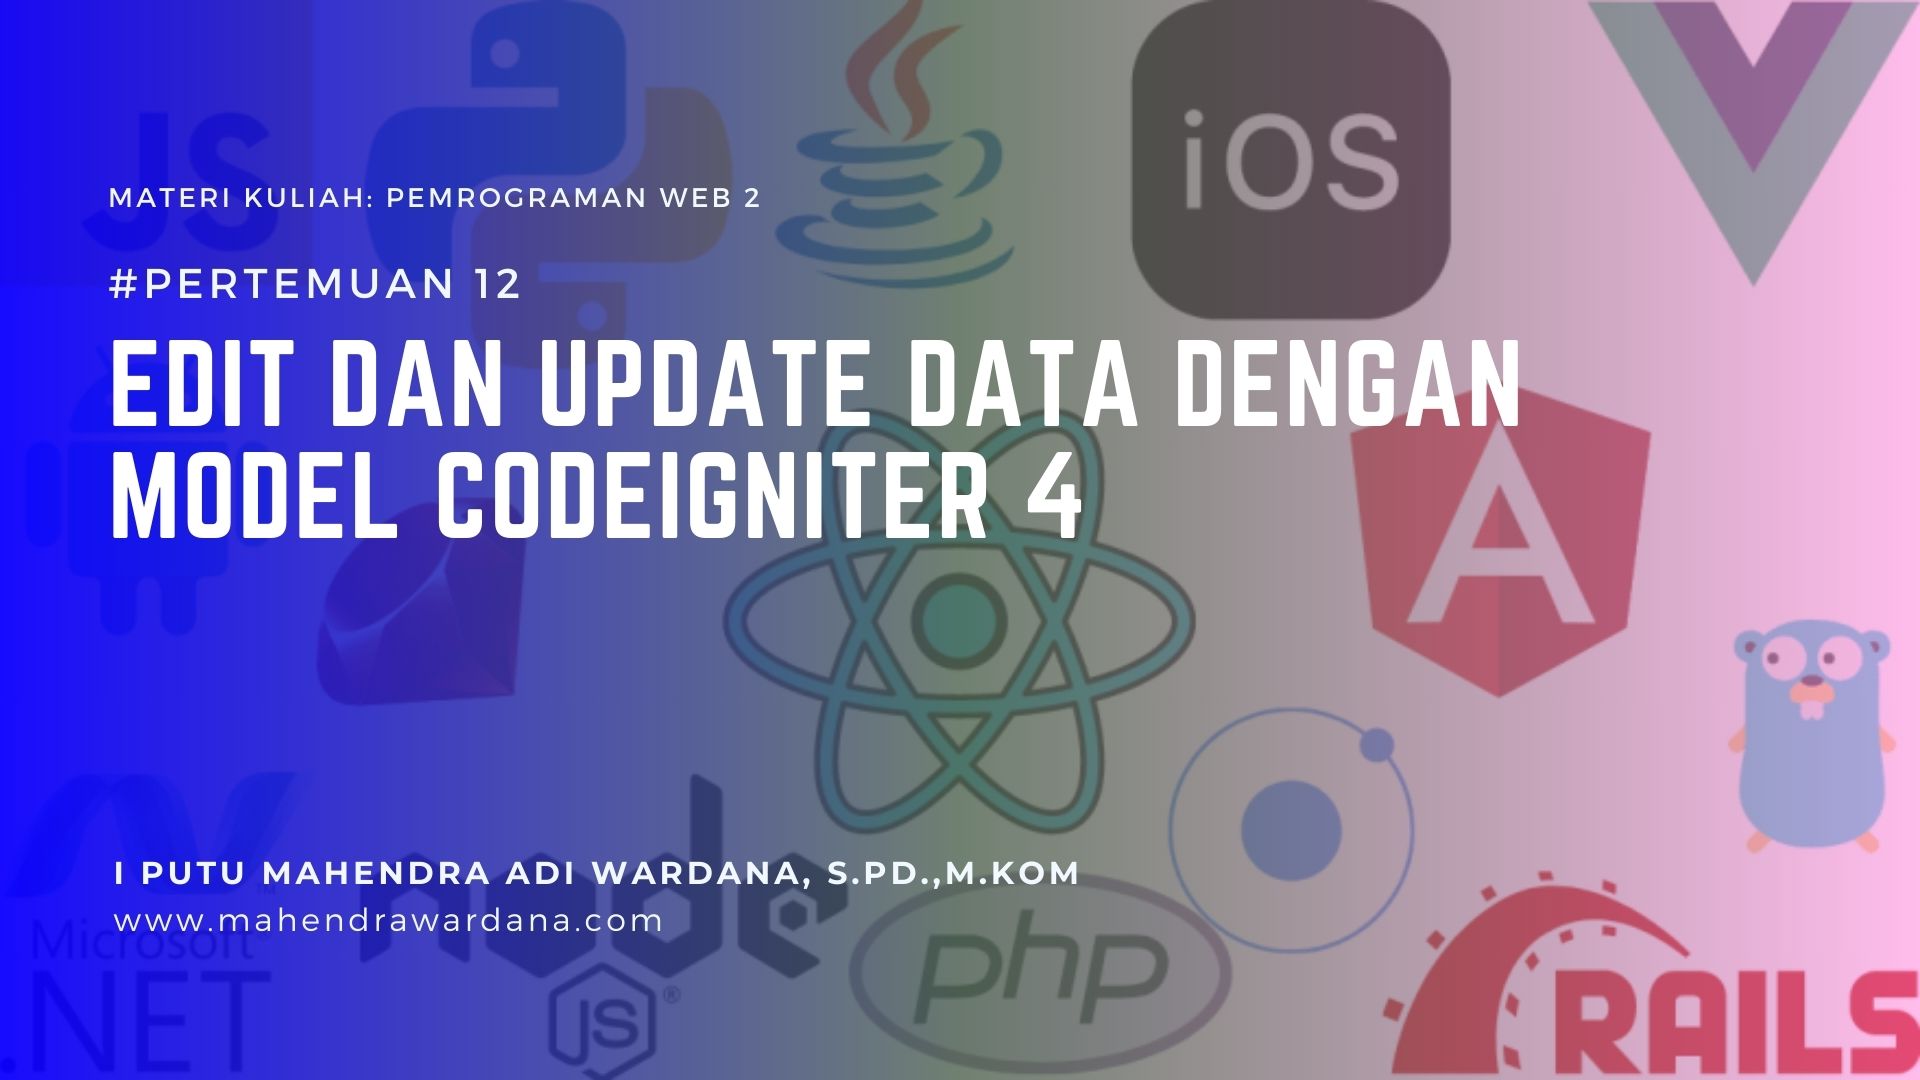 Pertemuan 12 - Edit dan Update Data dengan Model CodeIgniter 4